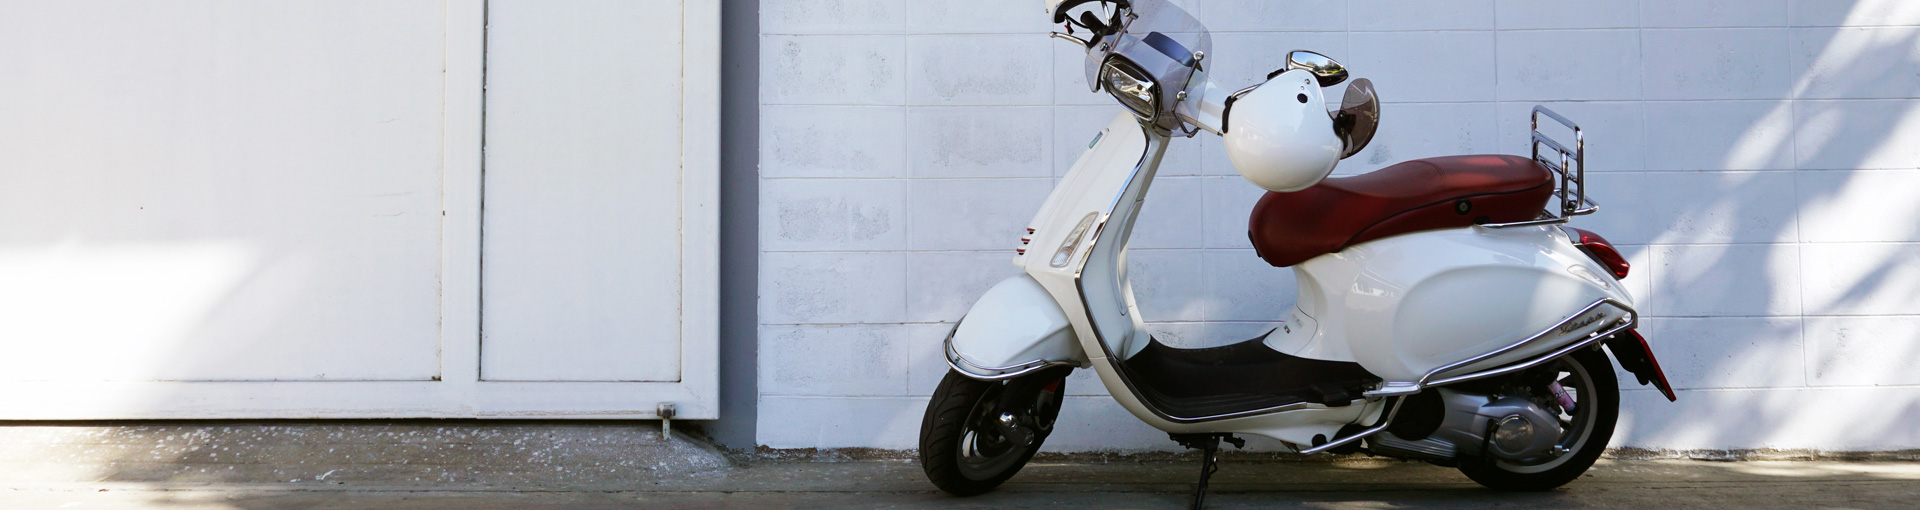 Un scooter blanc contre un mur